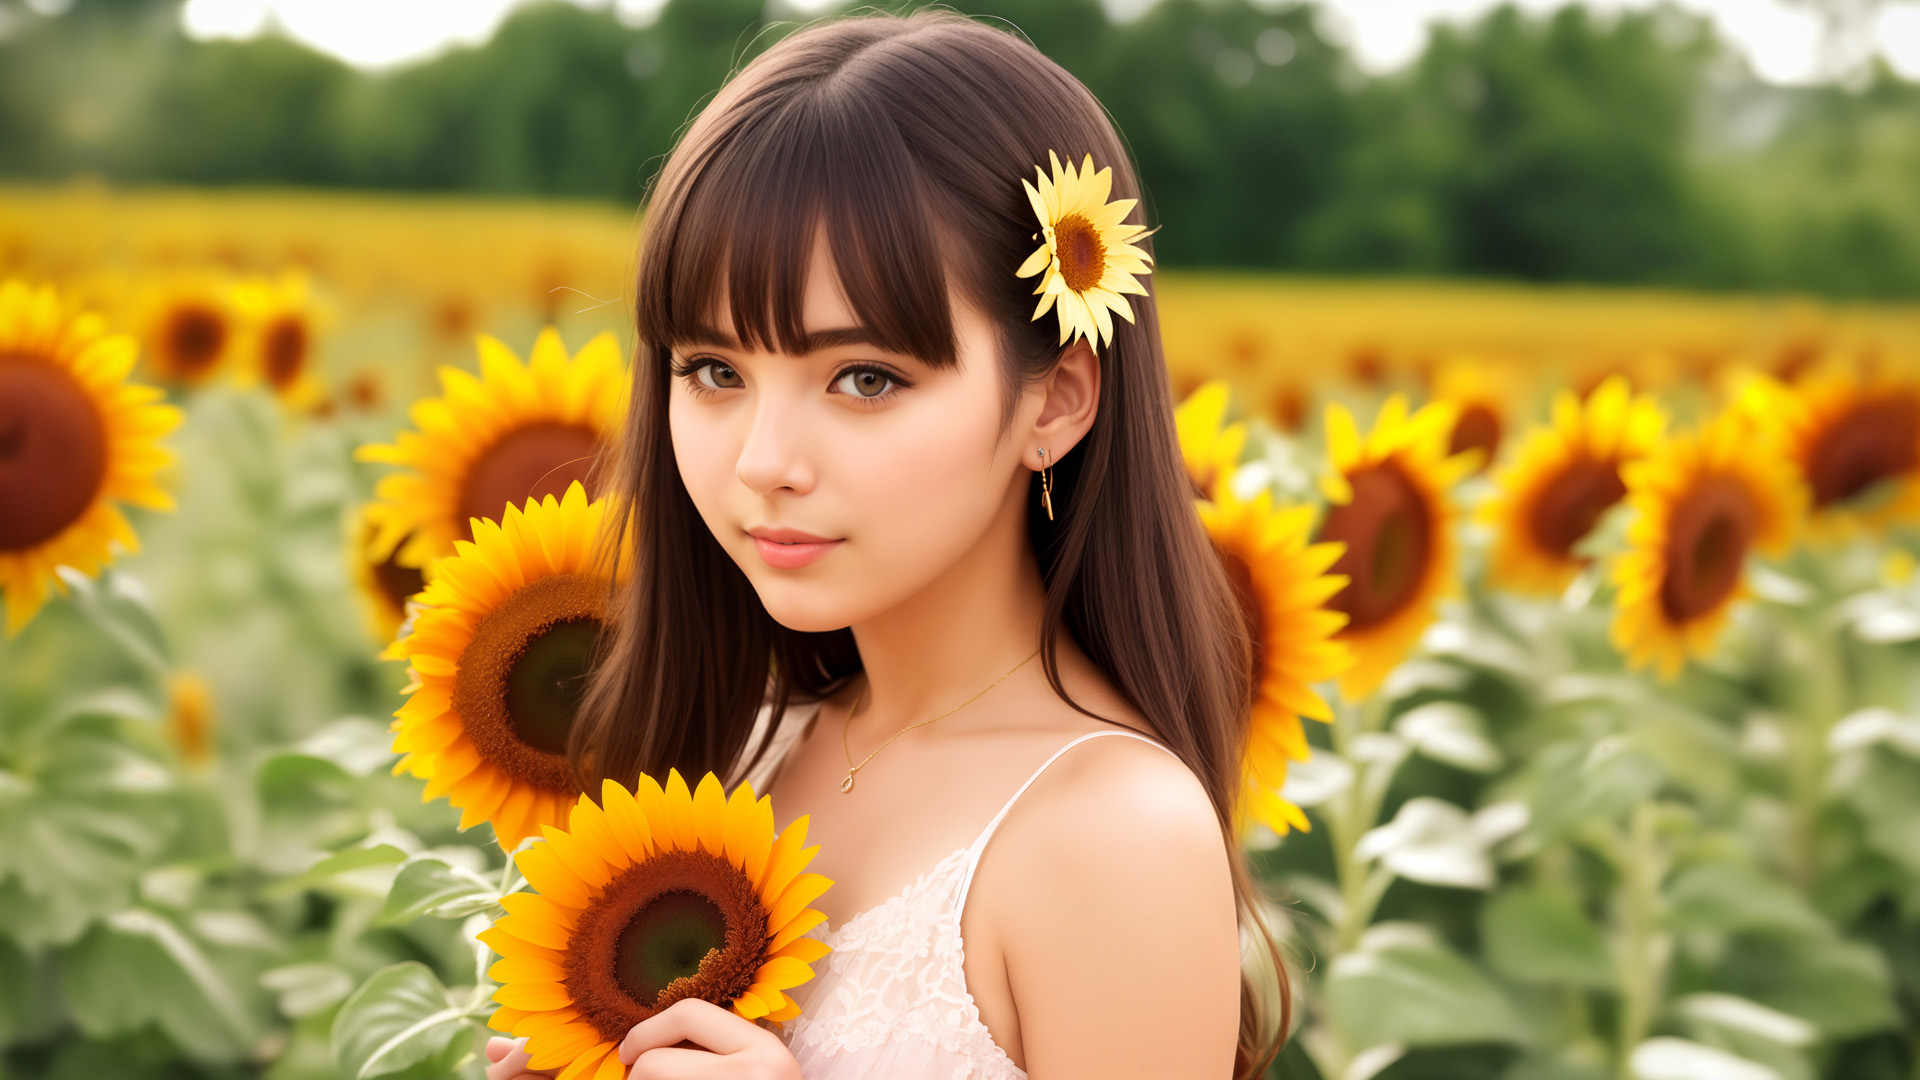 dziewczyna, słoneczniki, kwiat w dłoniach, kwiat we włosach, lato, pole słoneczników, żółty, natura, harmonia, ciepło, promienie słońca, piękno, modelka, flora, letni dzień